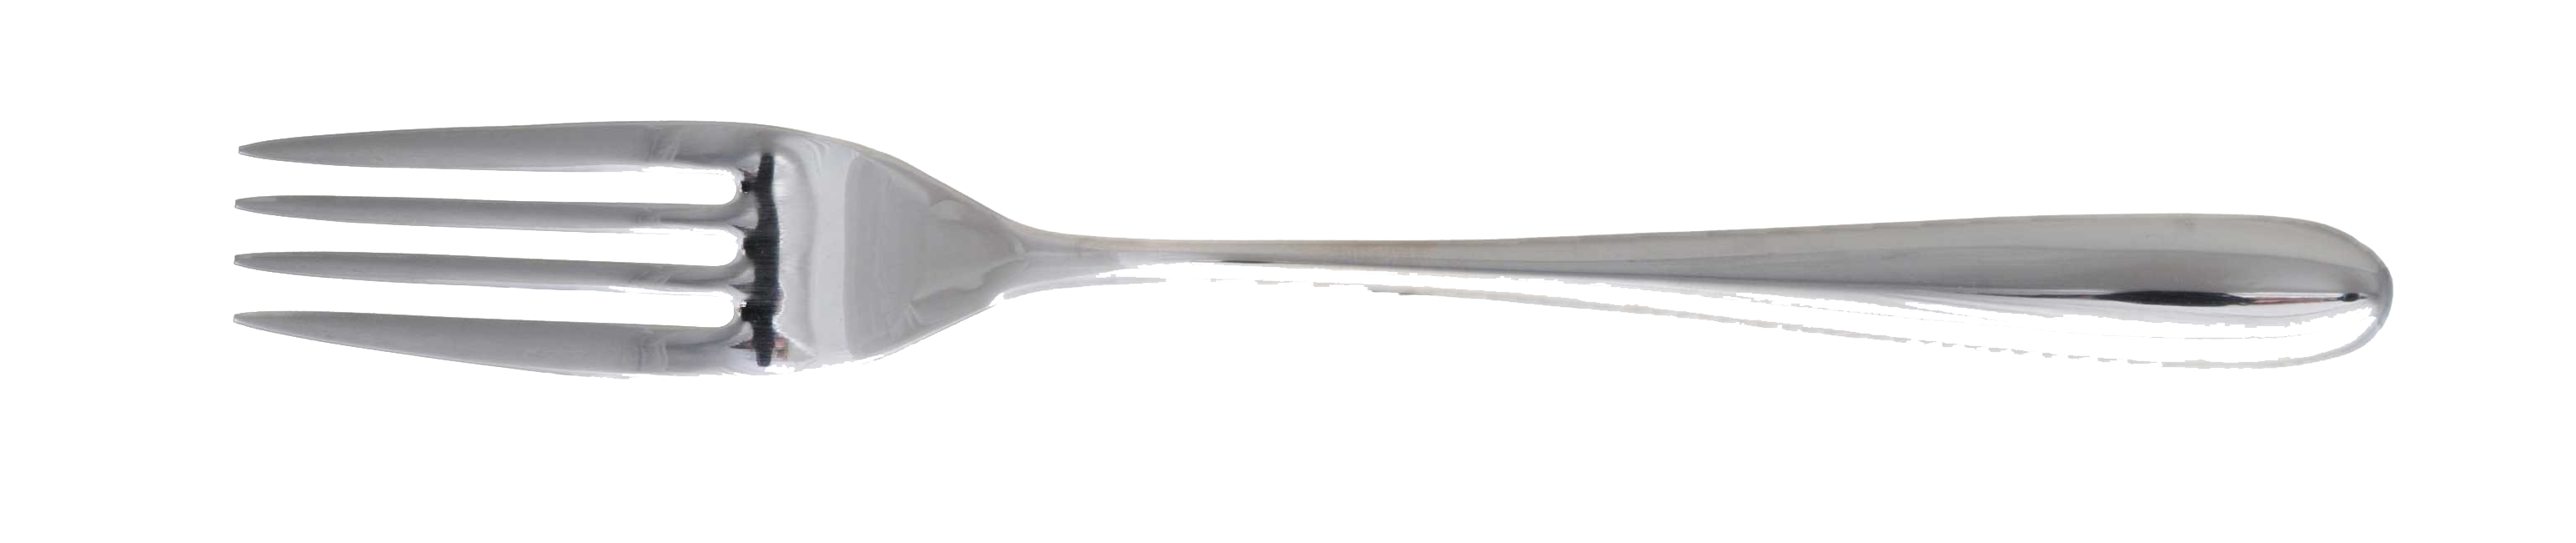 Fork PNG Transparent